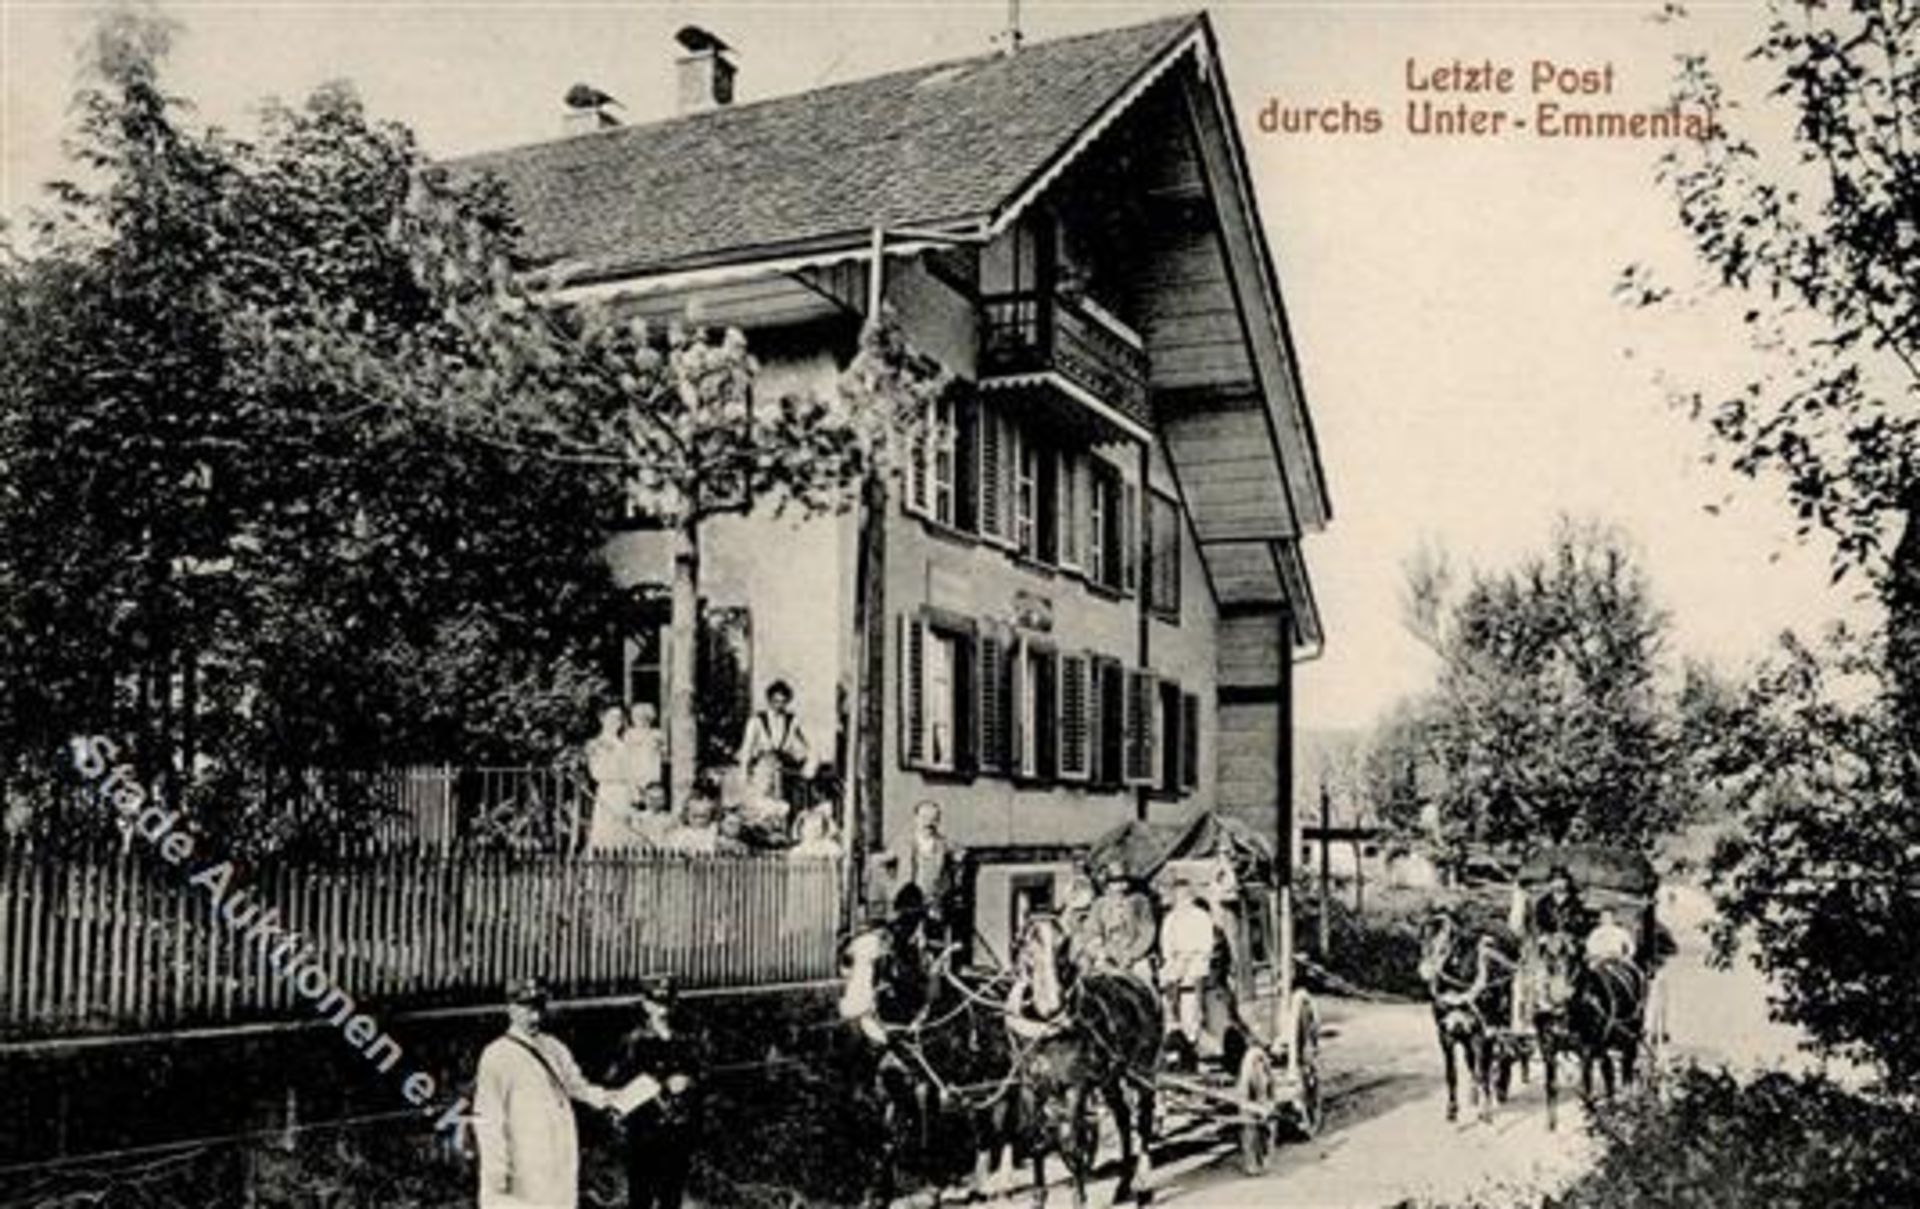 Dietlikon (8305) Schweiz Letzte Post durchs Unter-Emmental Postamt Postkutsche 1914 IDieses Los wird